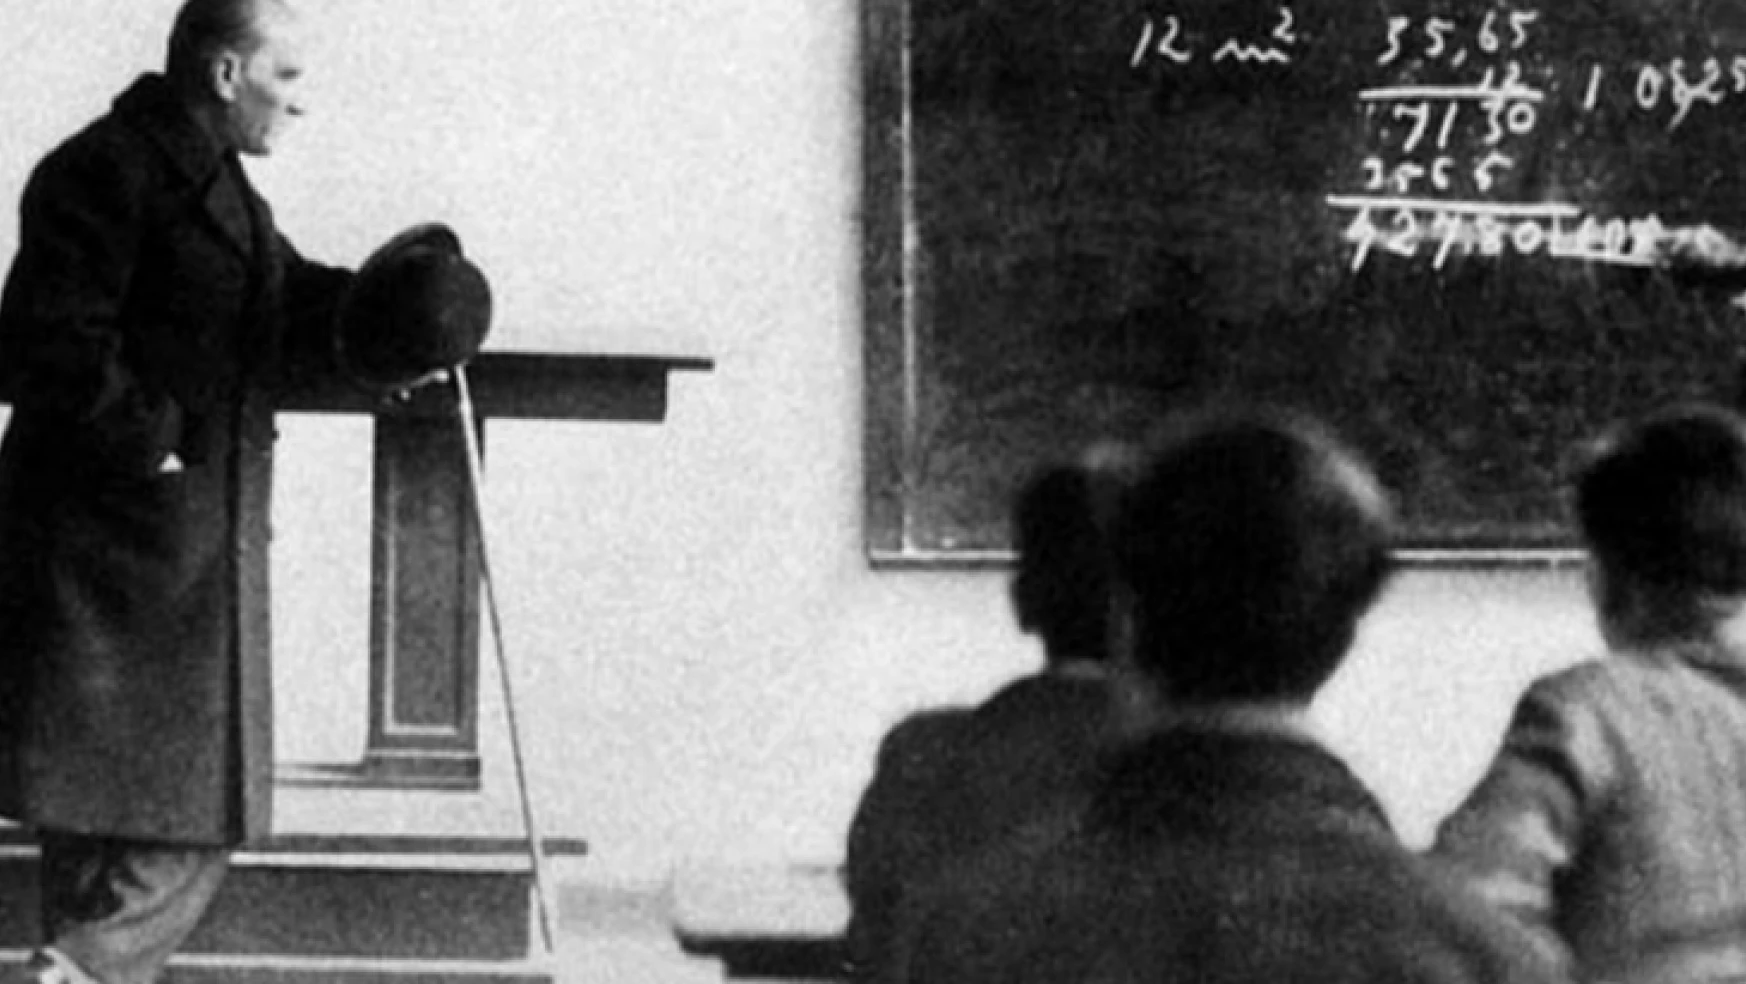 Başöğretmen Mustafa Kemal Atatürk ve öğretmenlere bakışını ifade eden 20 sözü